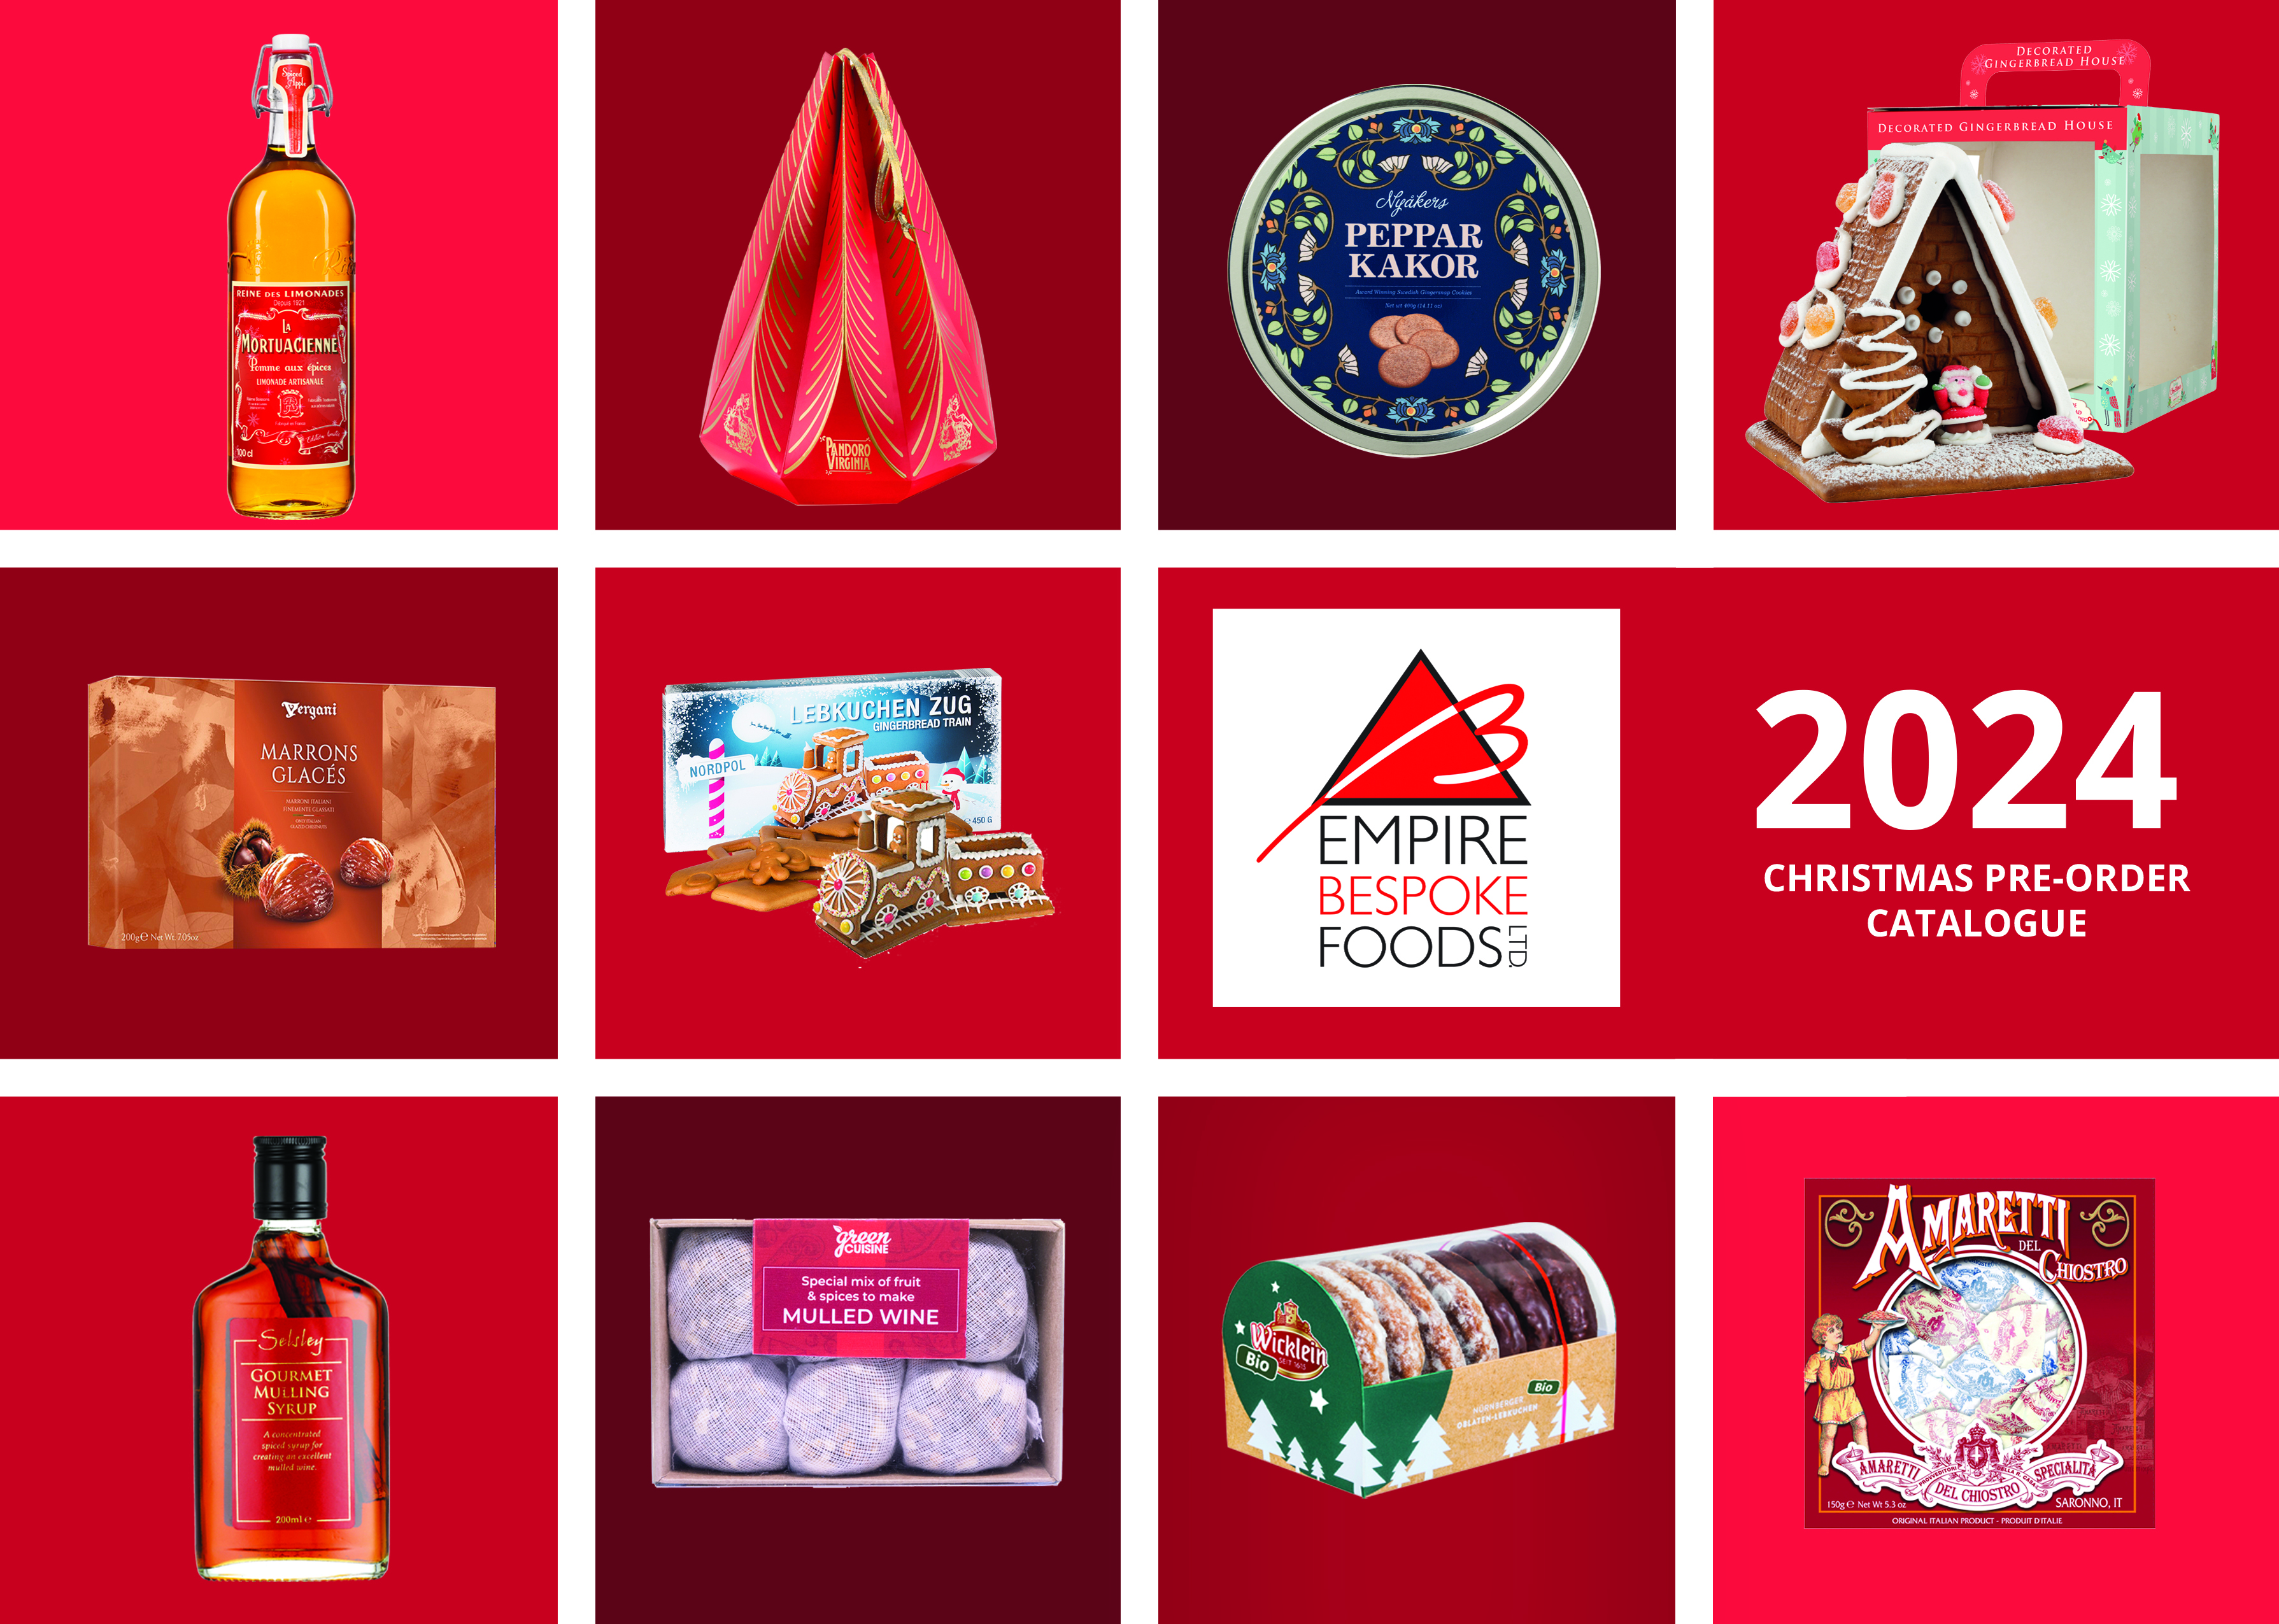 Empire Bespoke Foods Christmas Pre Order catalogue